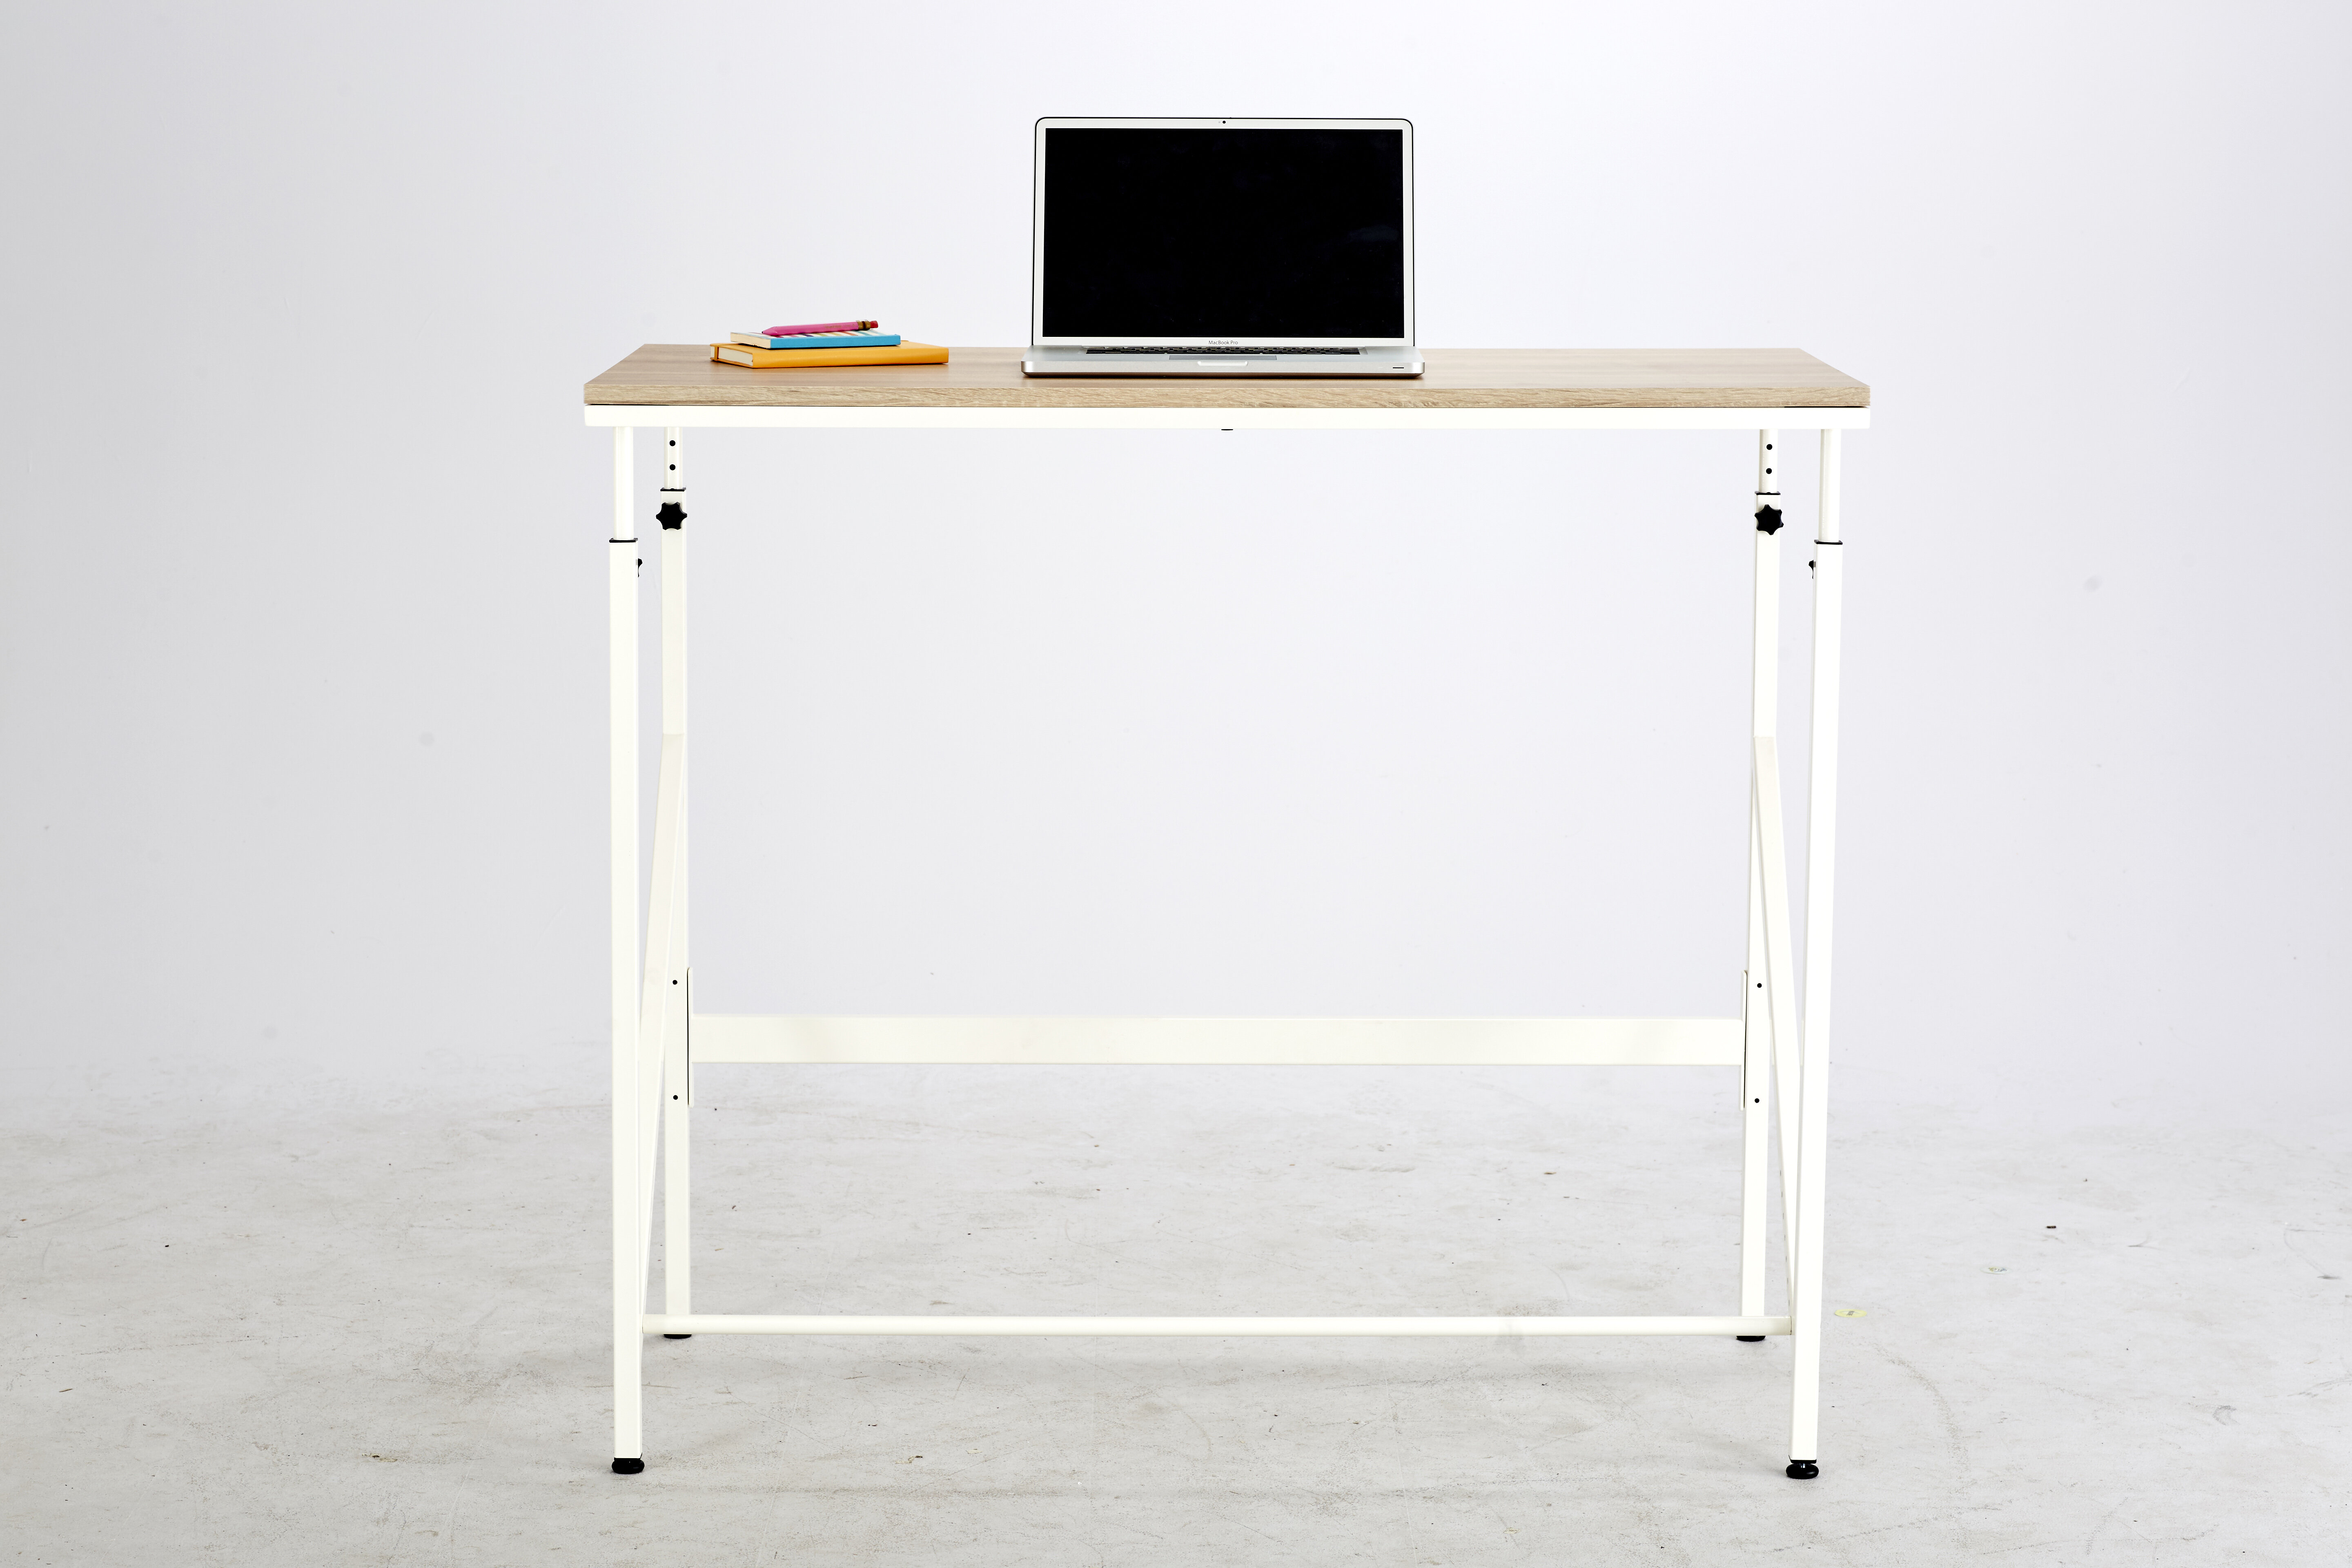 https://assets.wfcdn.com/im/23688723/compr-r85/1451/145158995/elevate-height-adjustable-standing-desk.jpg